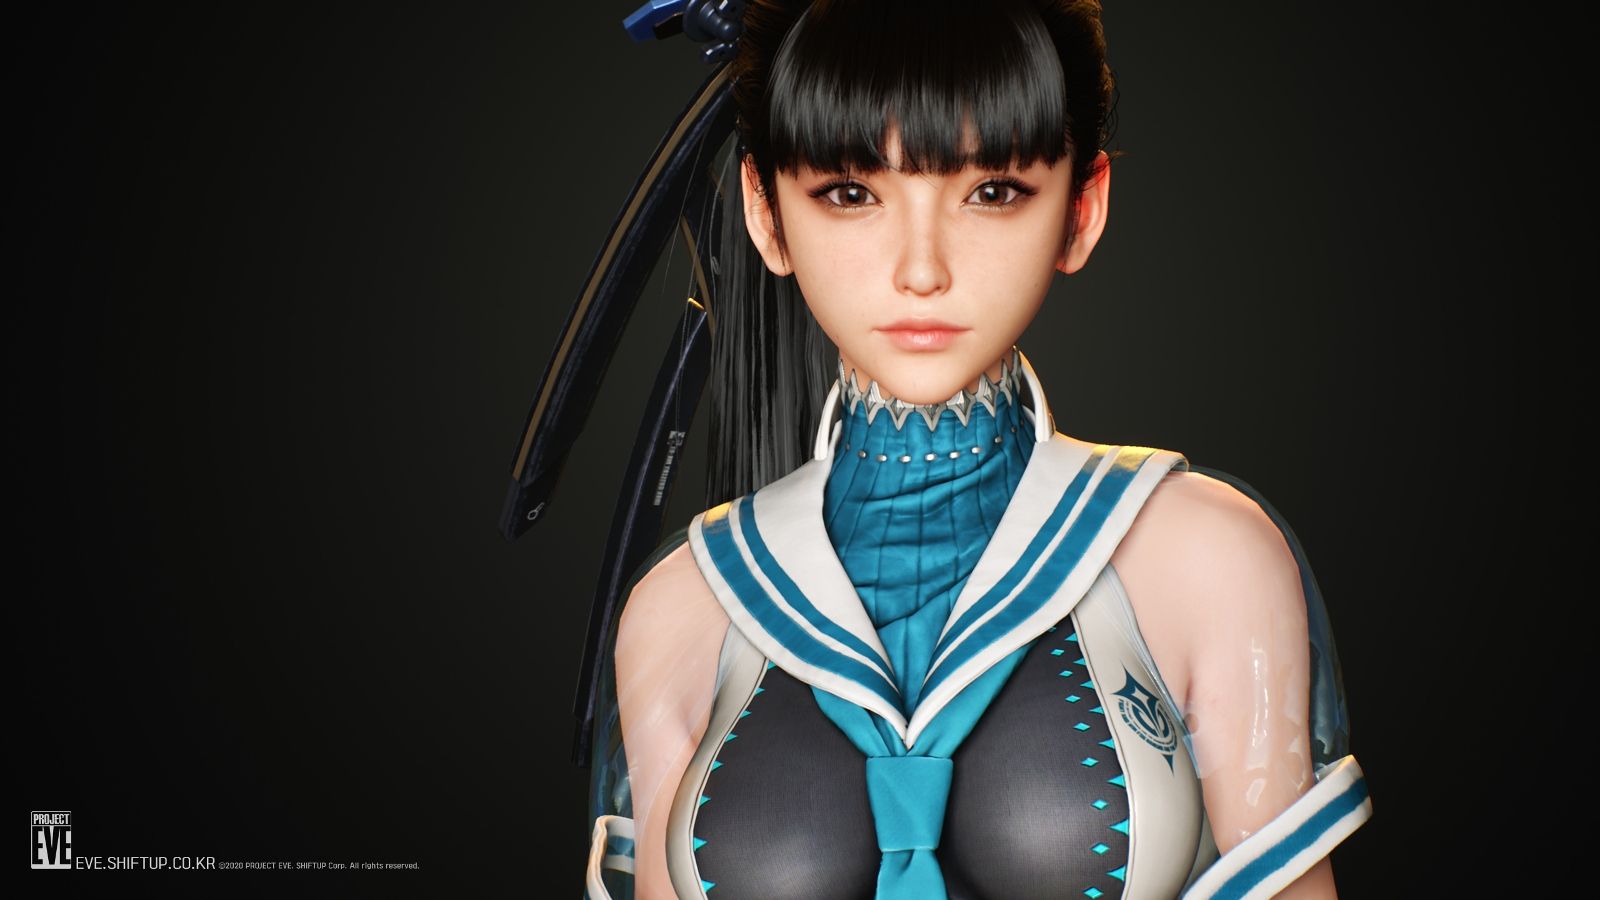 Project EVE công bố gameplay và screenshot: Đồ họa siêu đỉnh và nữ chính cực xinh